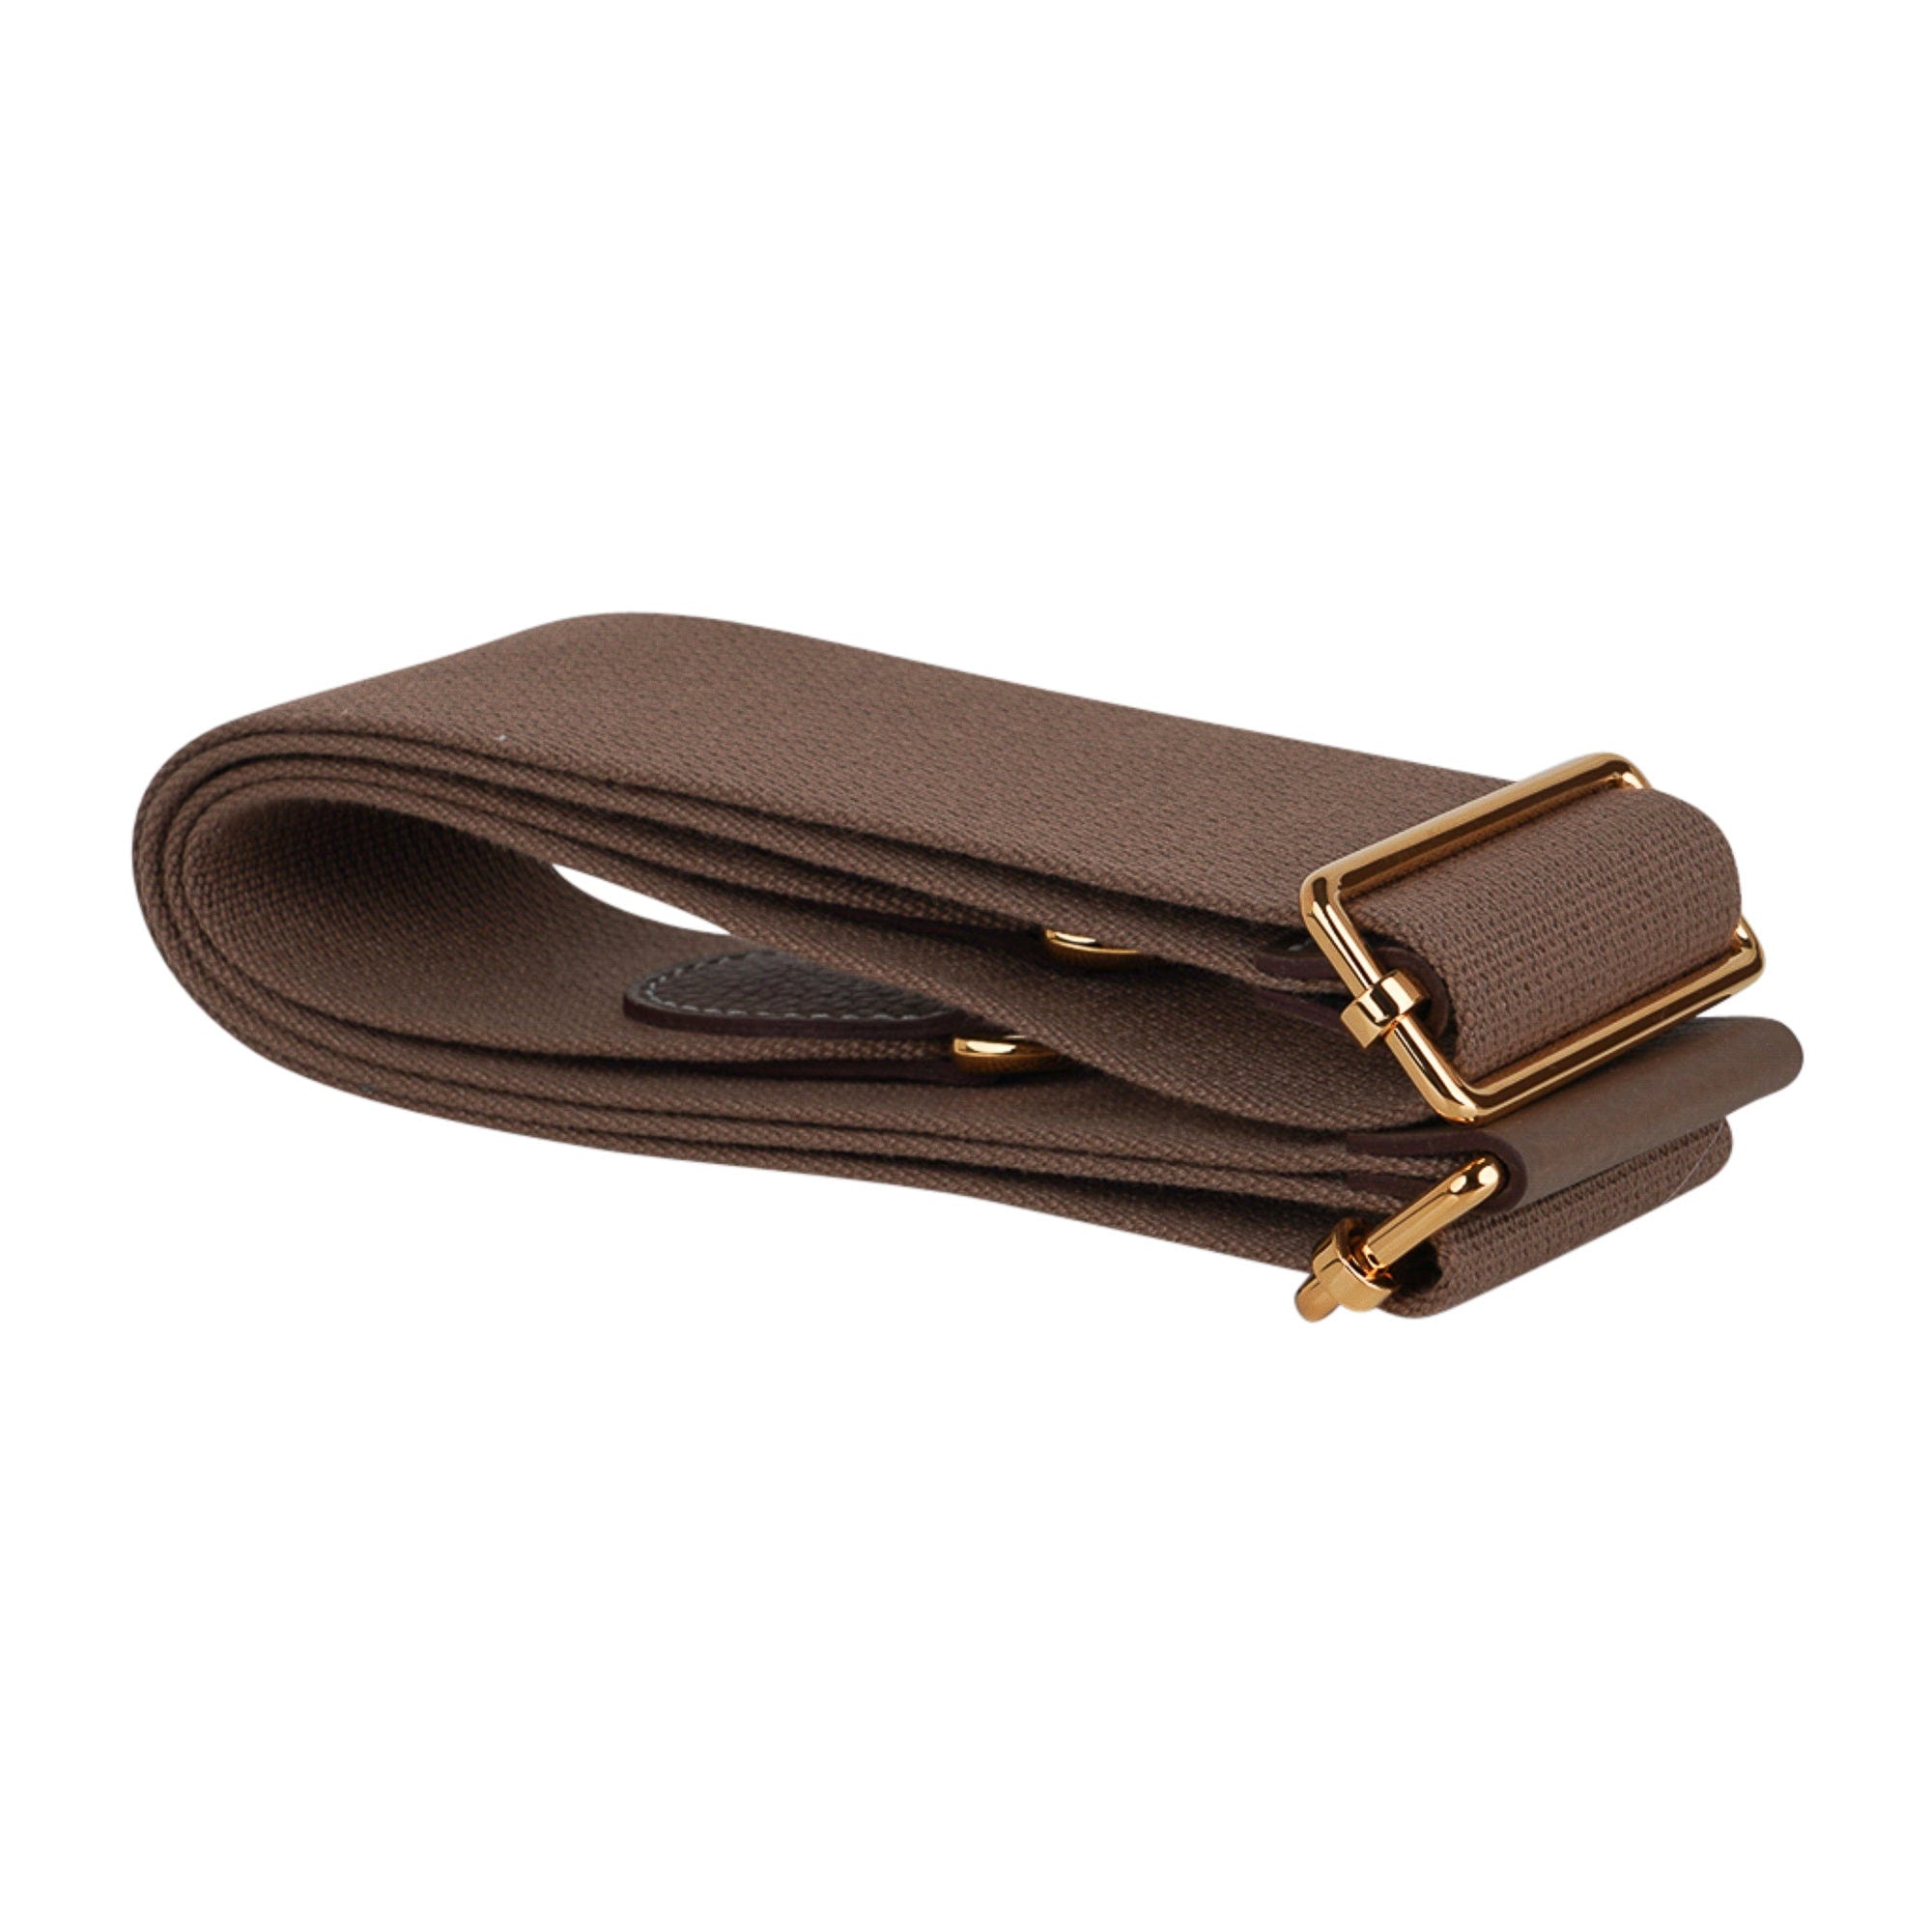 Hermès Mini Evelyne 16 Leather Bag Etoupe Clemence Gold Hardware